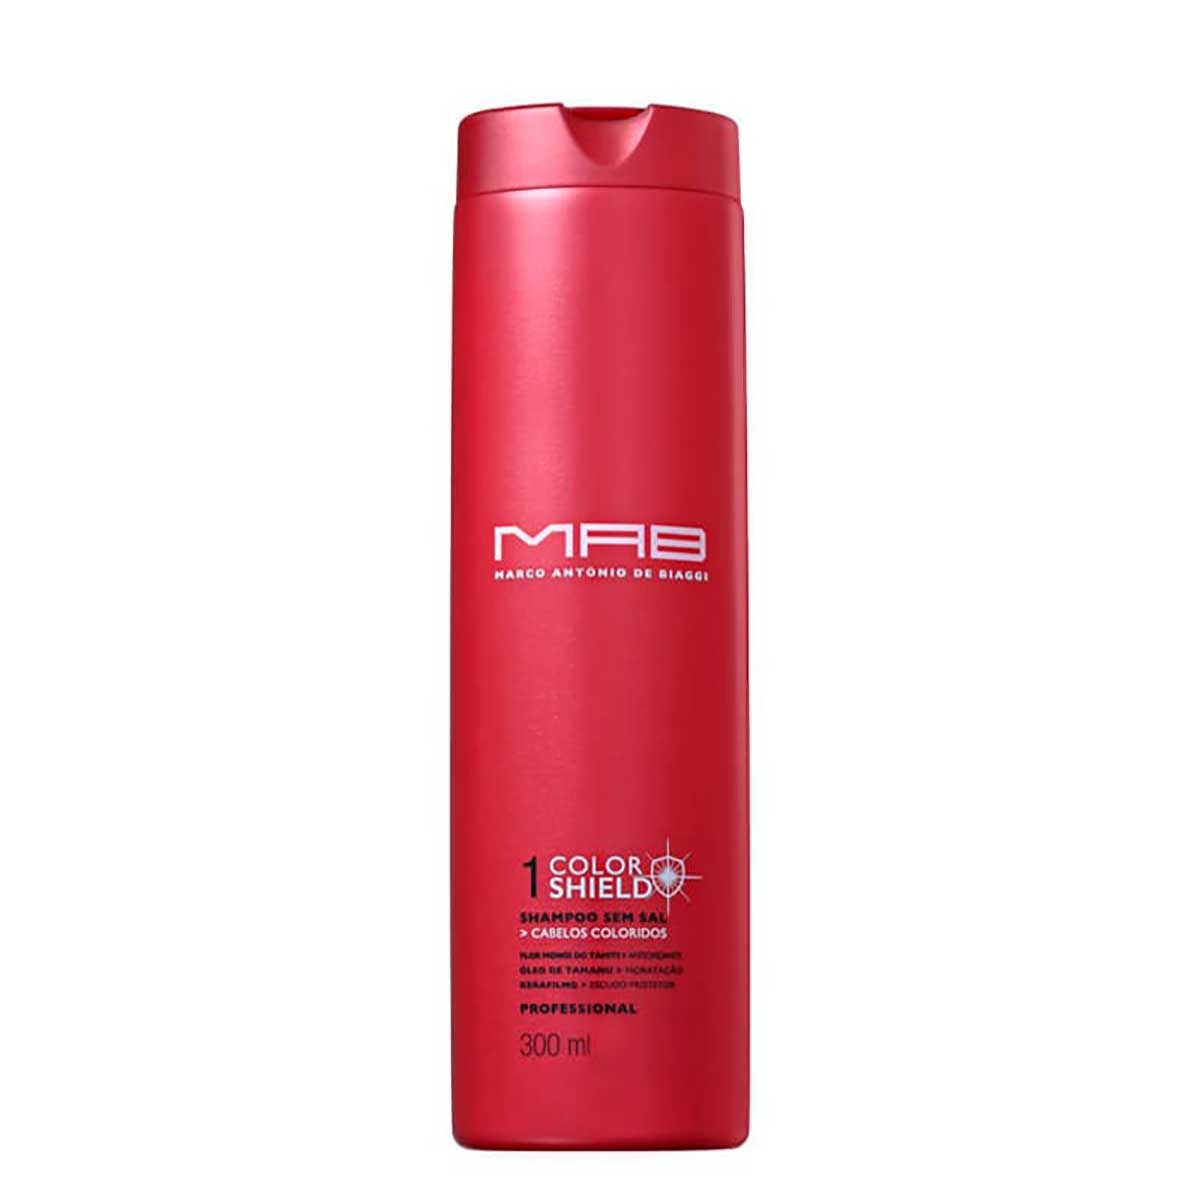 Shampoo MAB Color Shield com 300ml 300ml